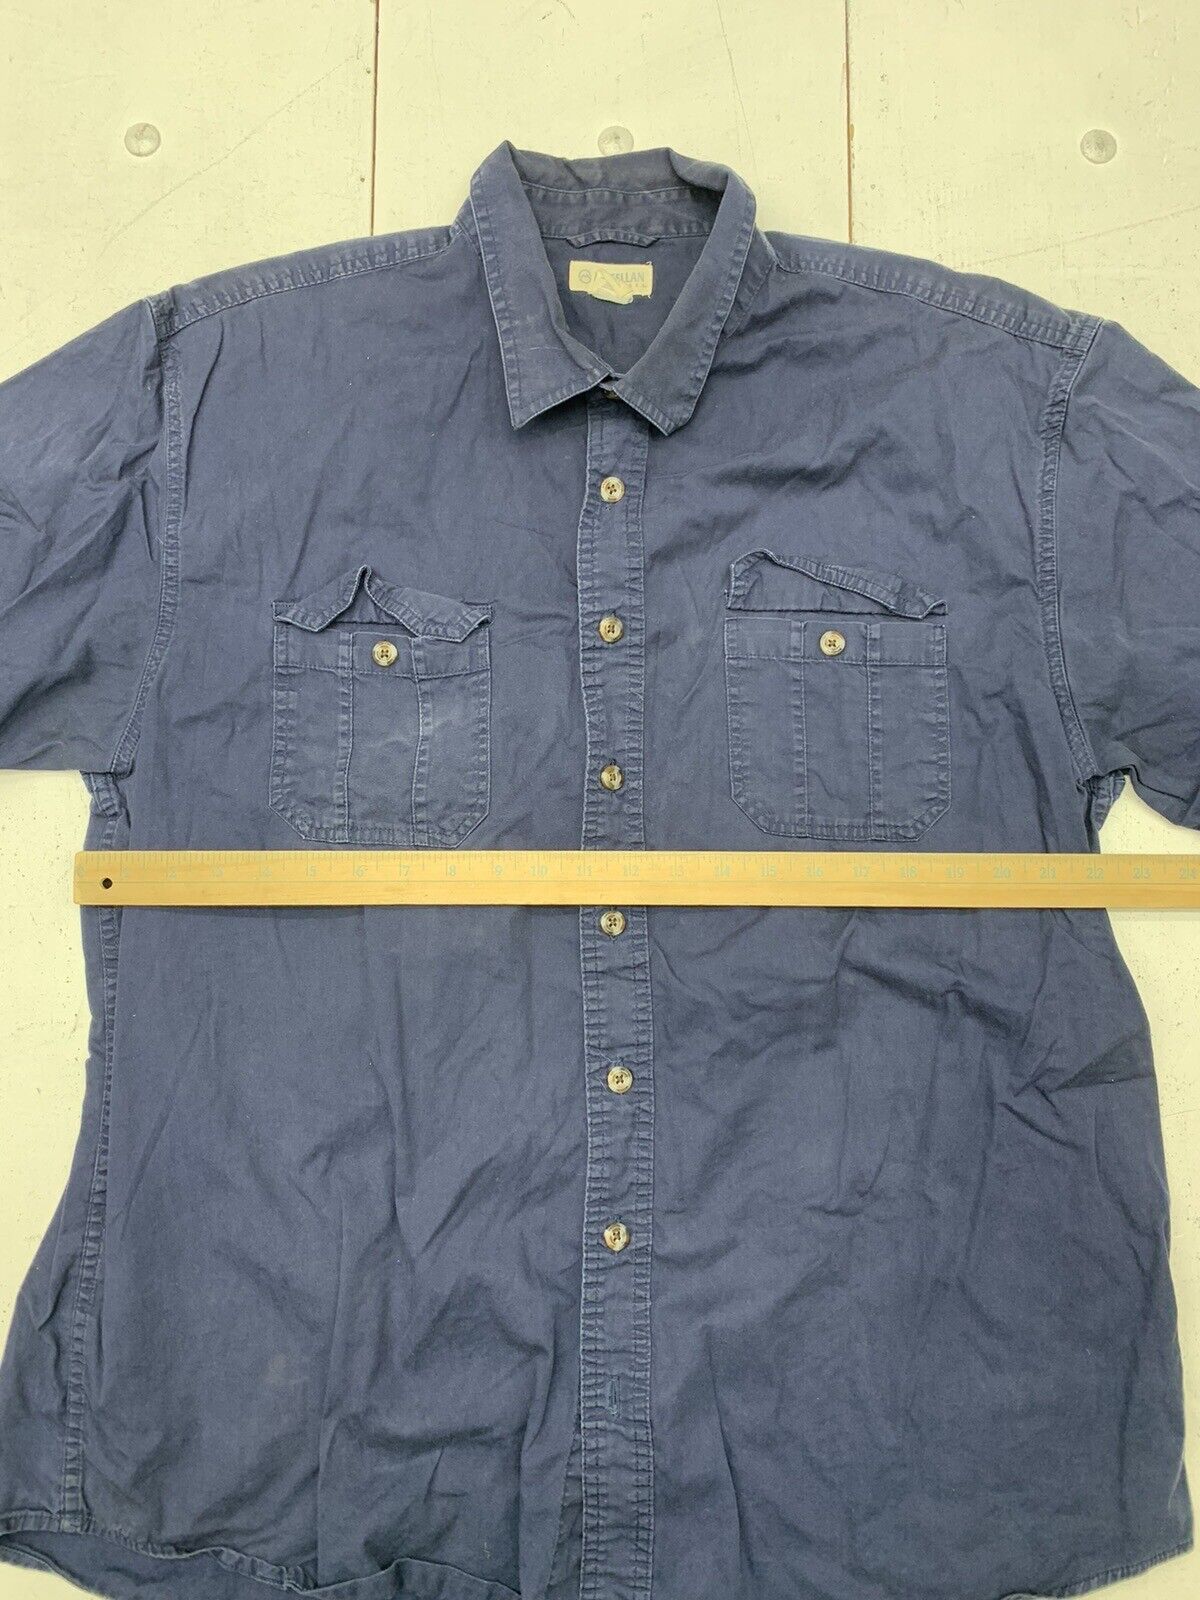 Magellan Outdoor Blue Plaid Long Sleeve Button Up Shirt Men Size XL